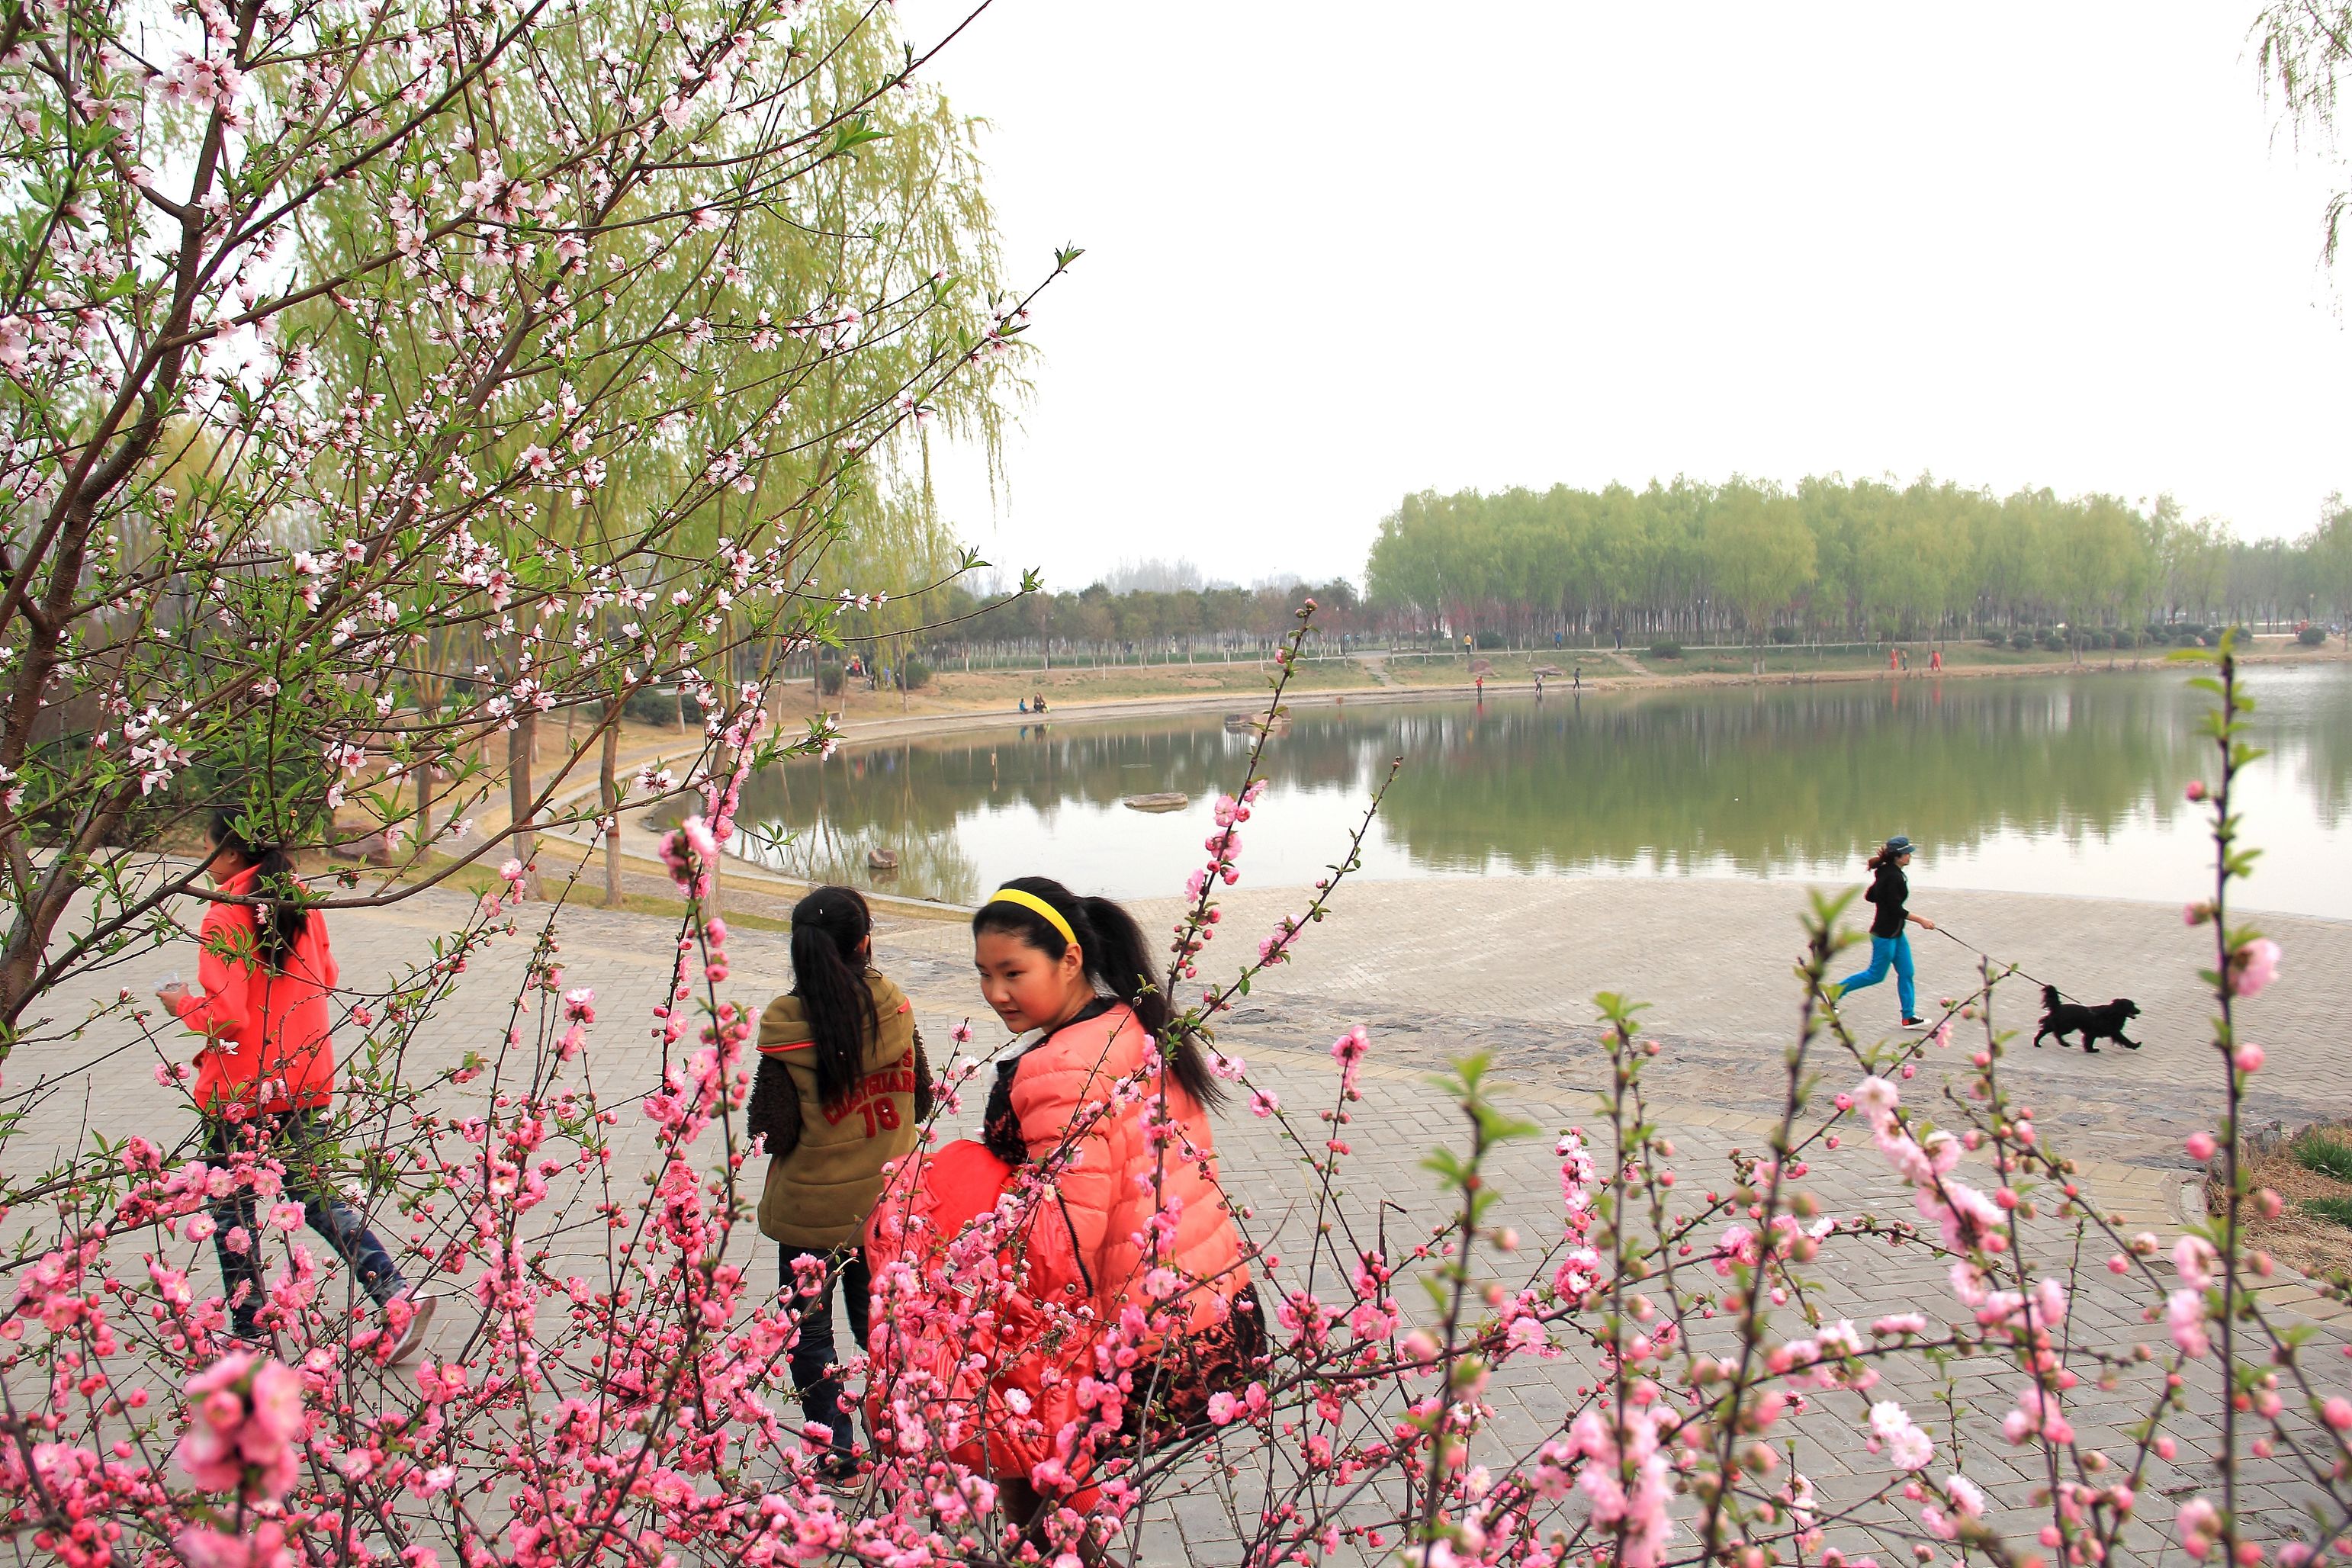 焦作新闻网讯  3月31日,游客在孟州市滨河公园踏青赏花.